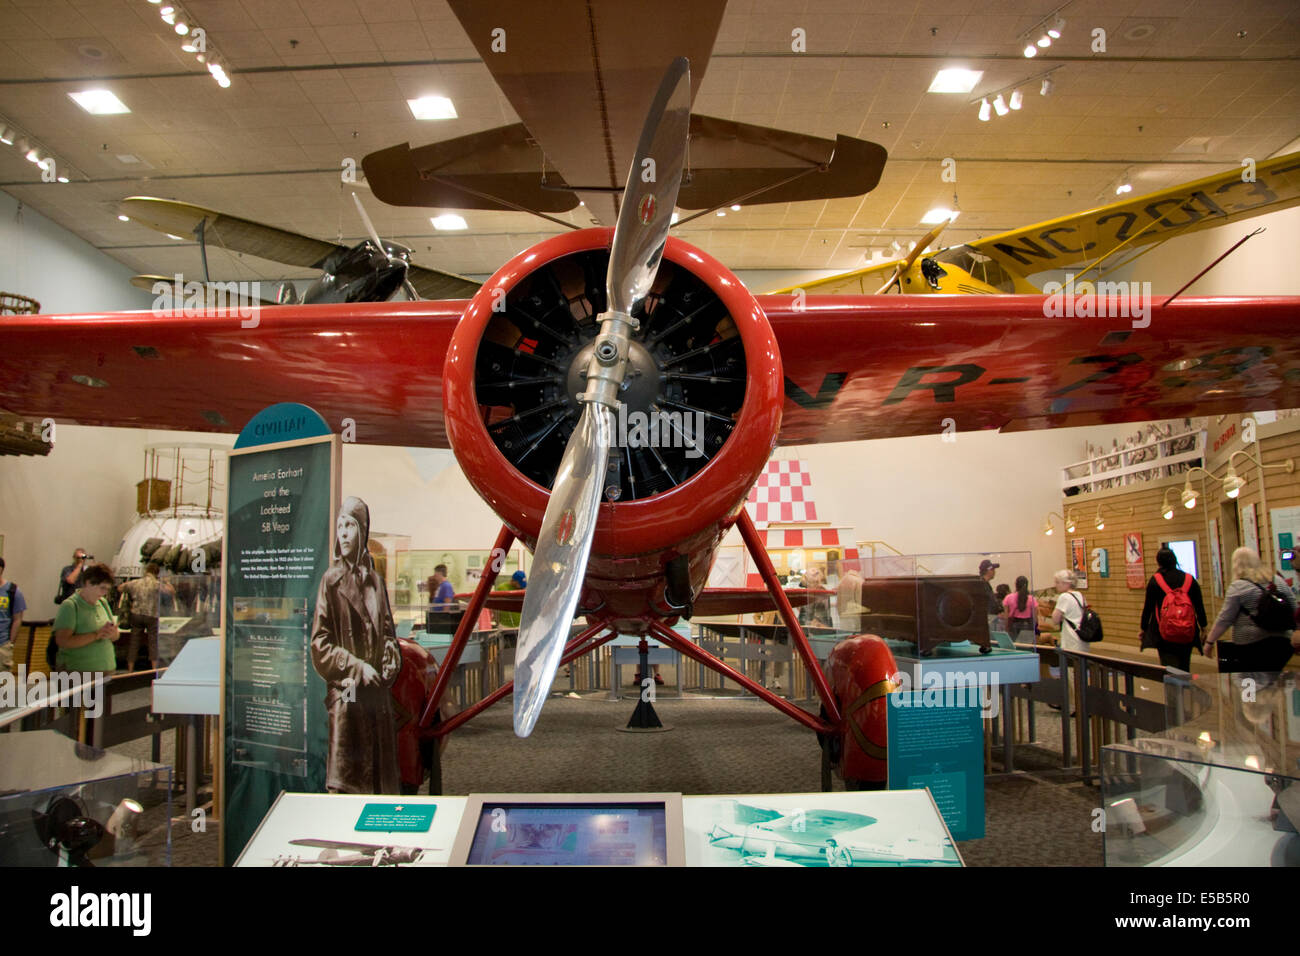 Amelia Earhart's red Lockheed Vega 5B, dans lequel elle est devenue la première femme à faire un solo de traversée de l'Atlantique. Banque D'Images